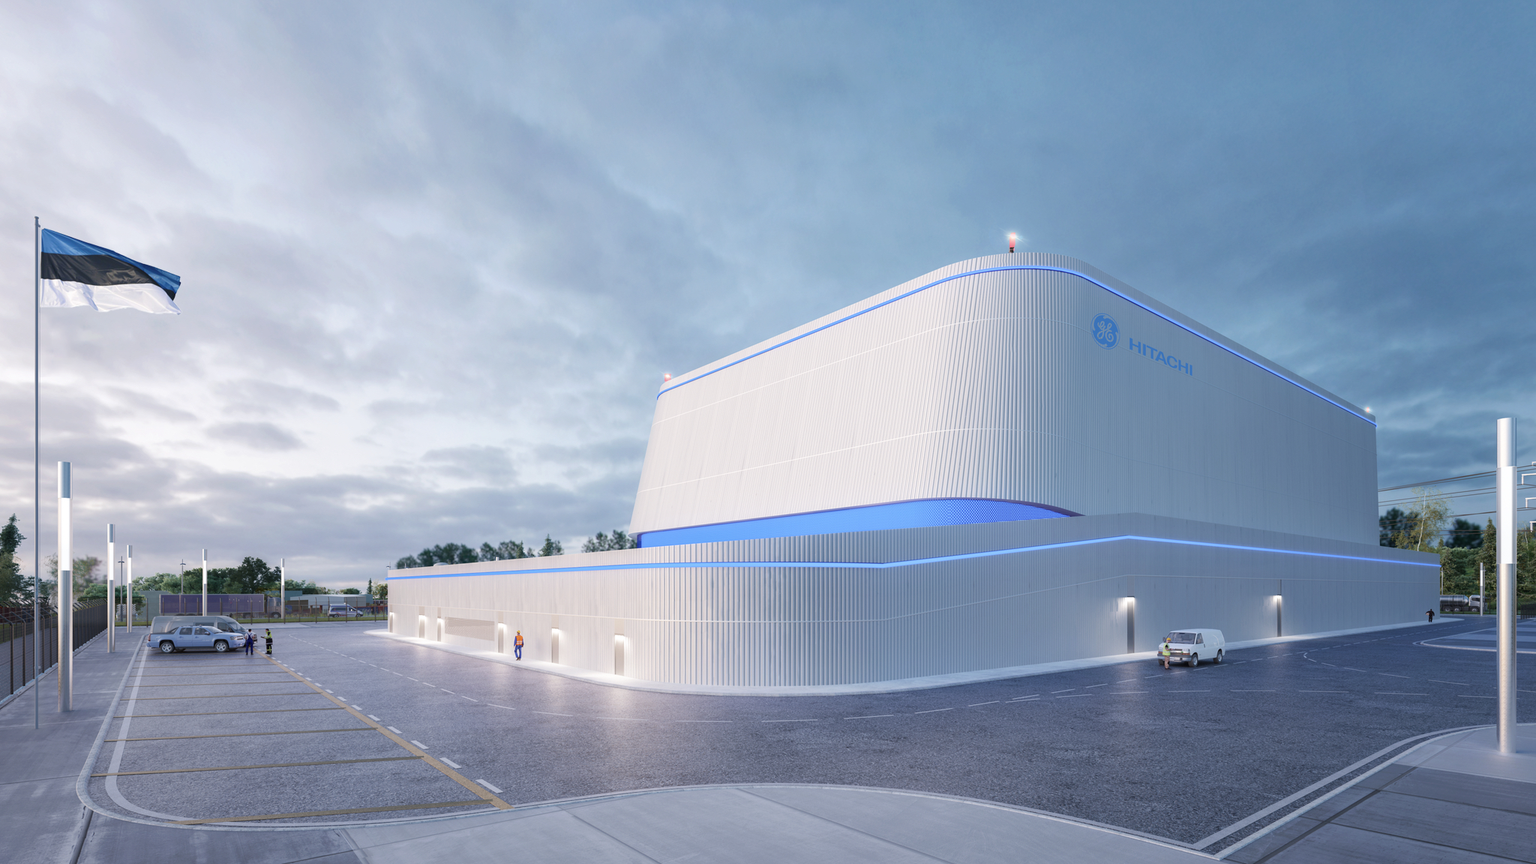 Selline võiks välja näha Eesti väike tuumajaam – praegu saadaolevaist üks moodsamaid, ent samas järeleproovitud tehnoloogiaga.